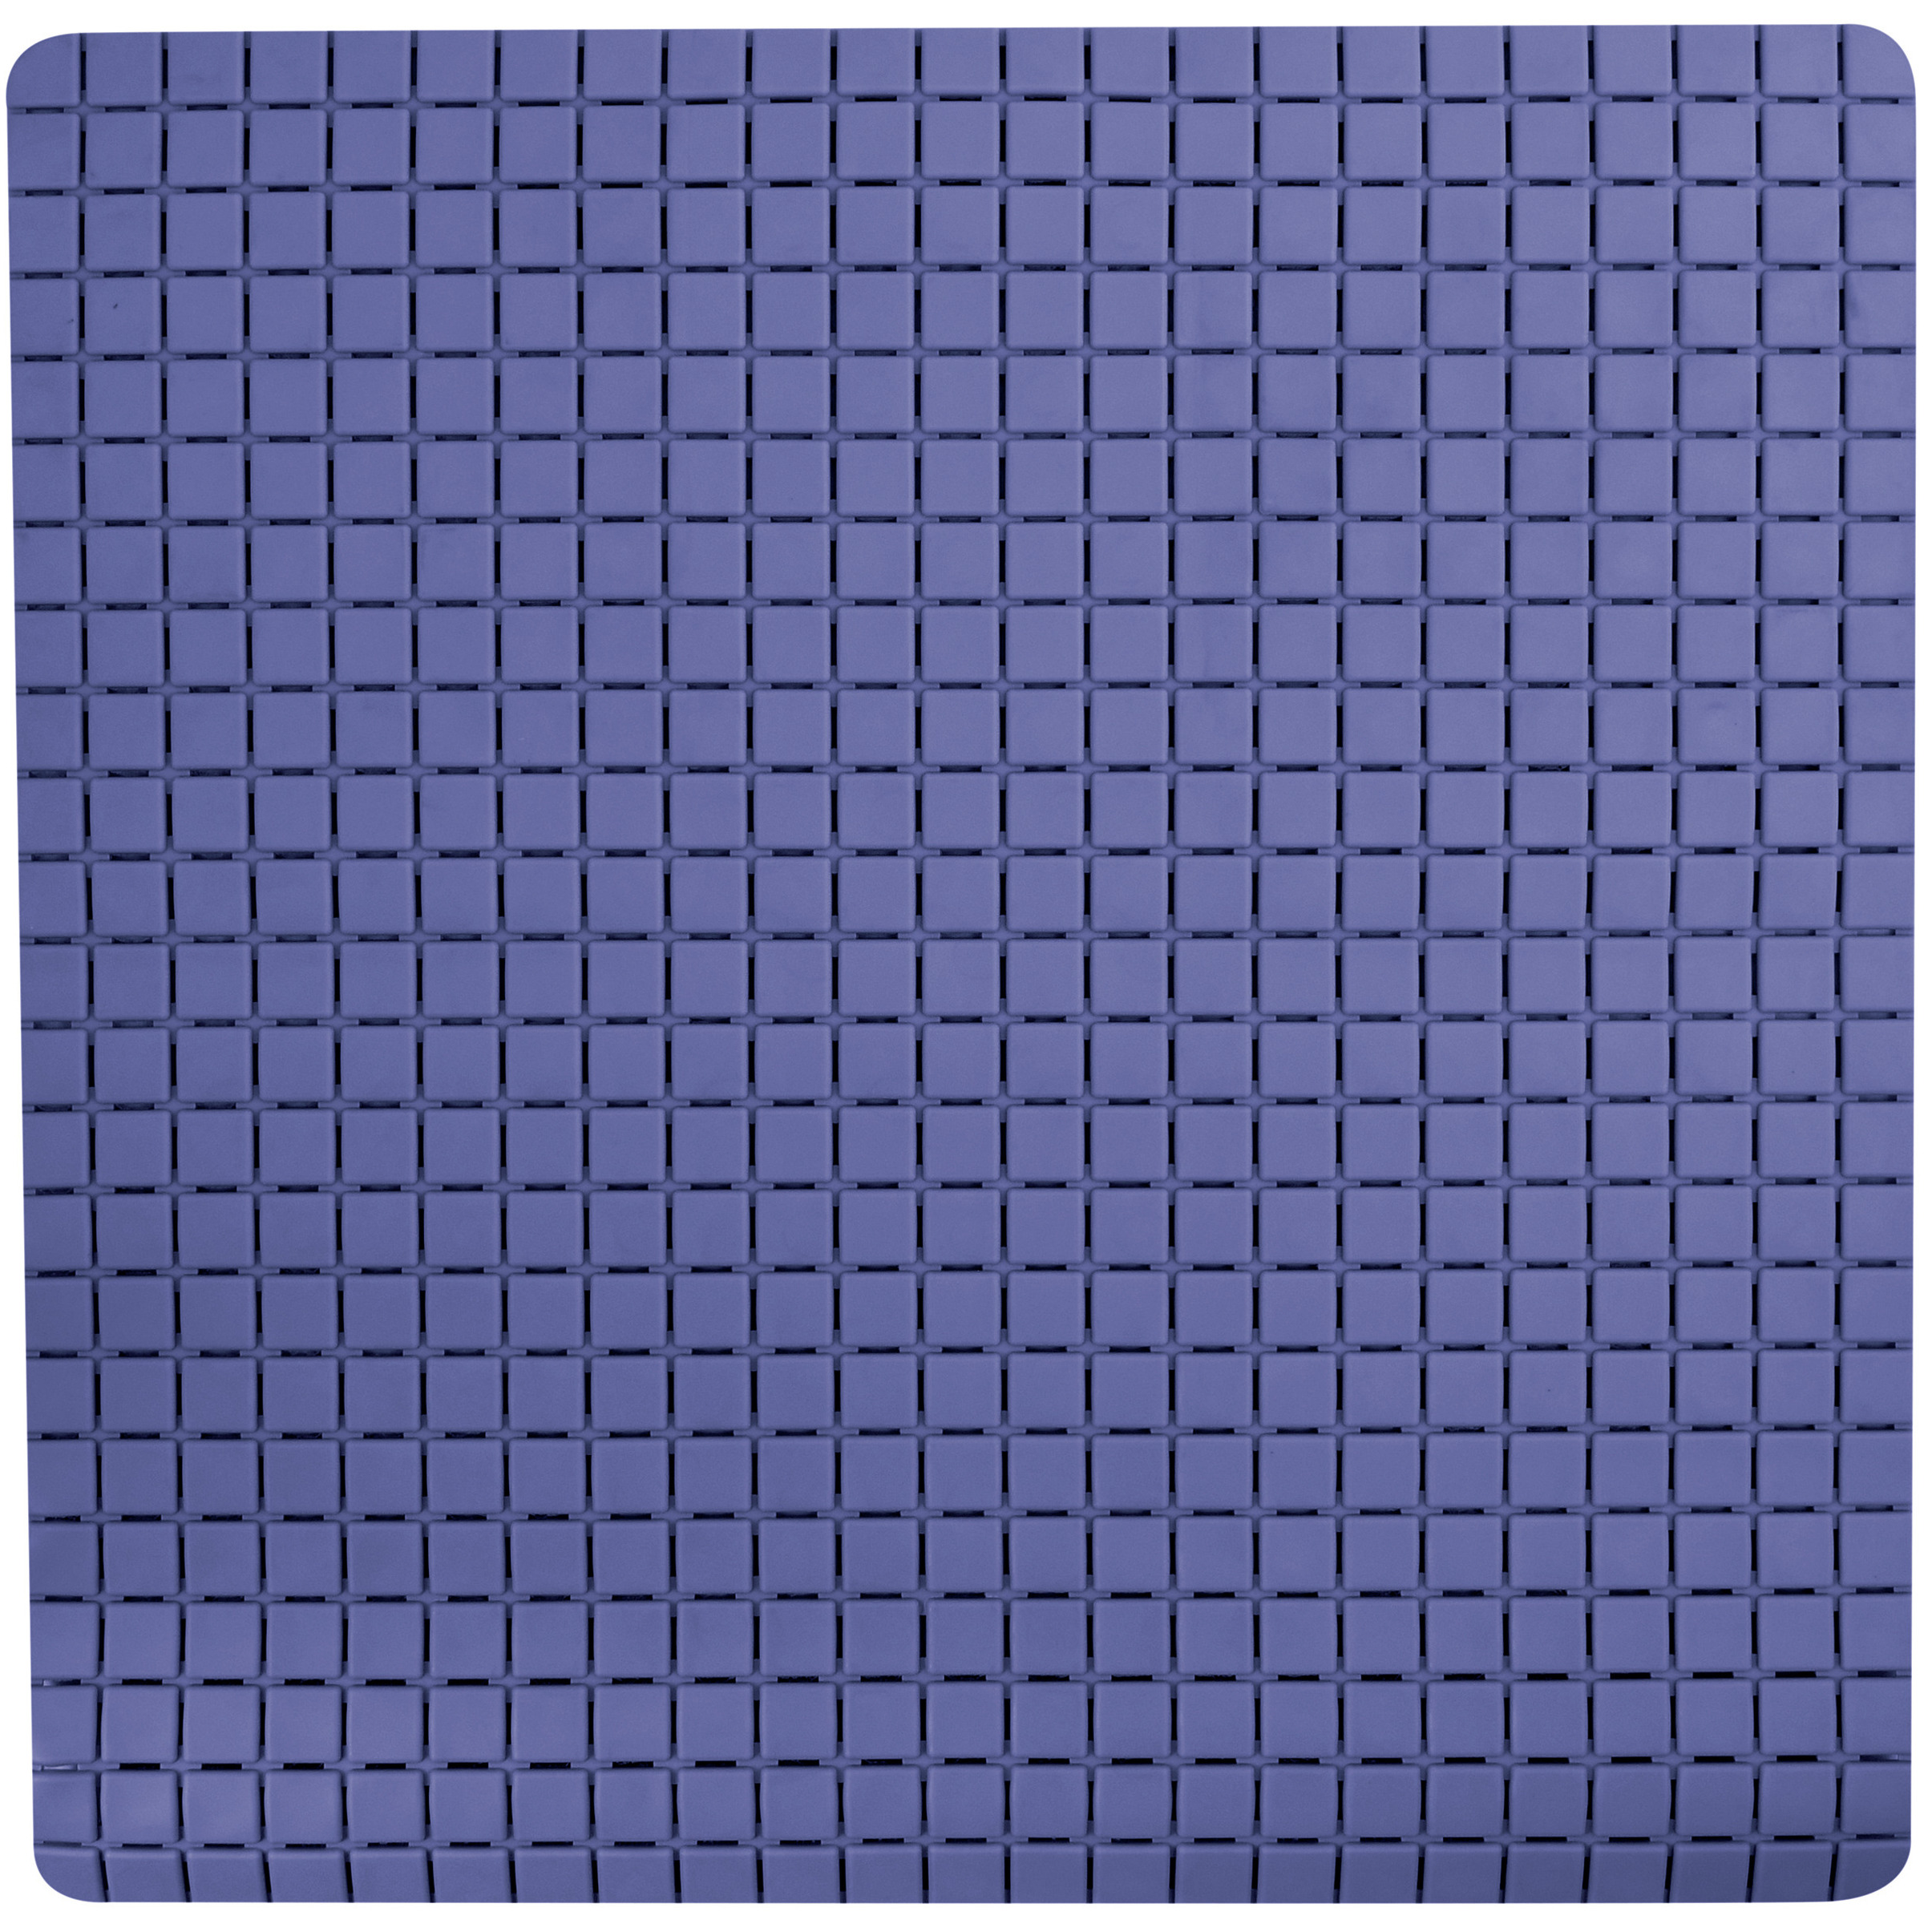 Douche-bad anti-slip mat badkamer rubber blauw 54 x 54 cm rechthoek